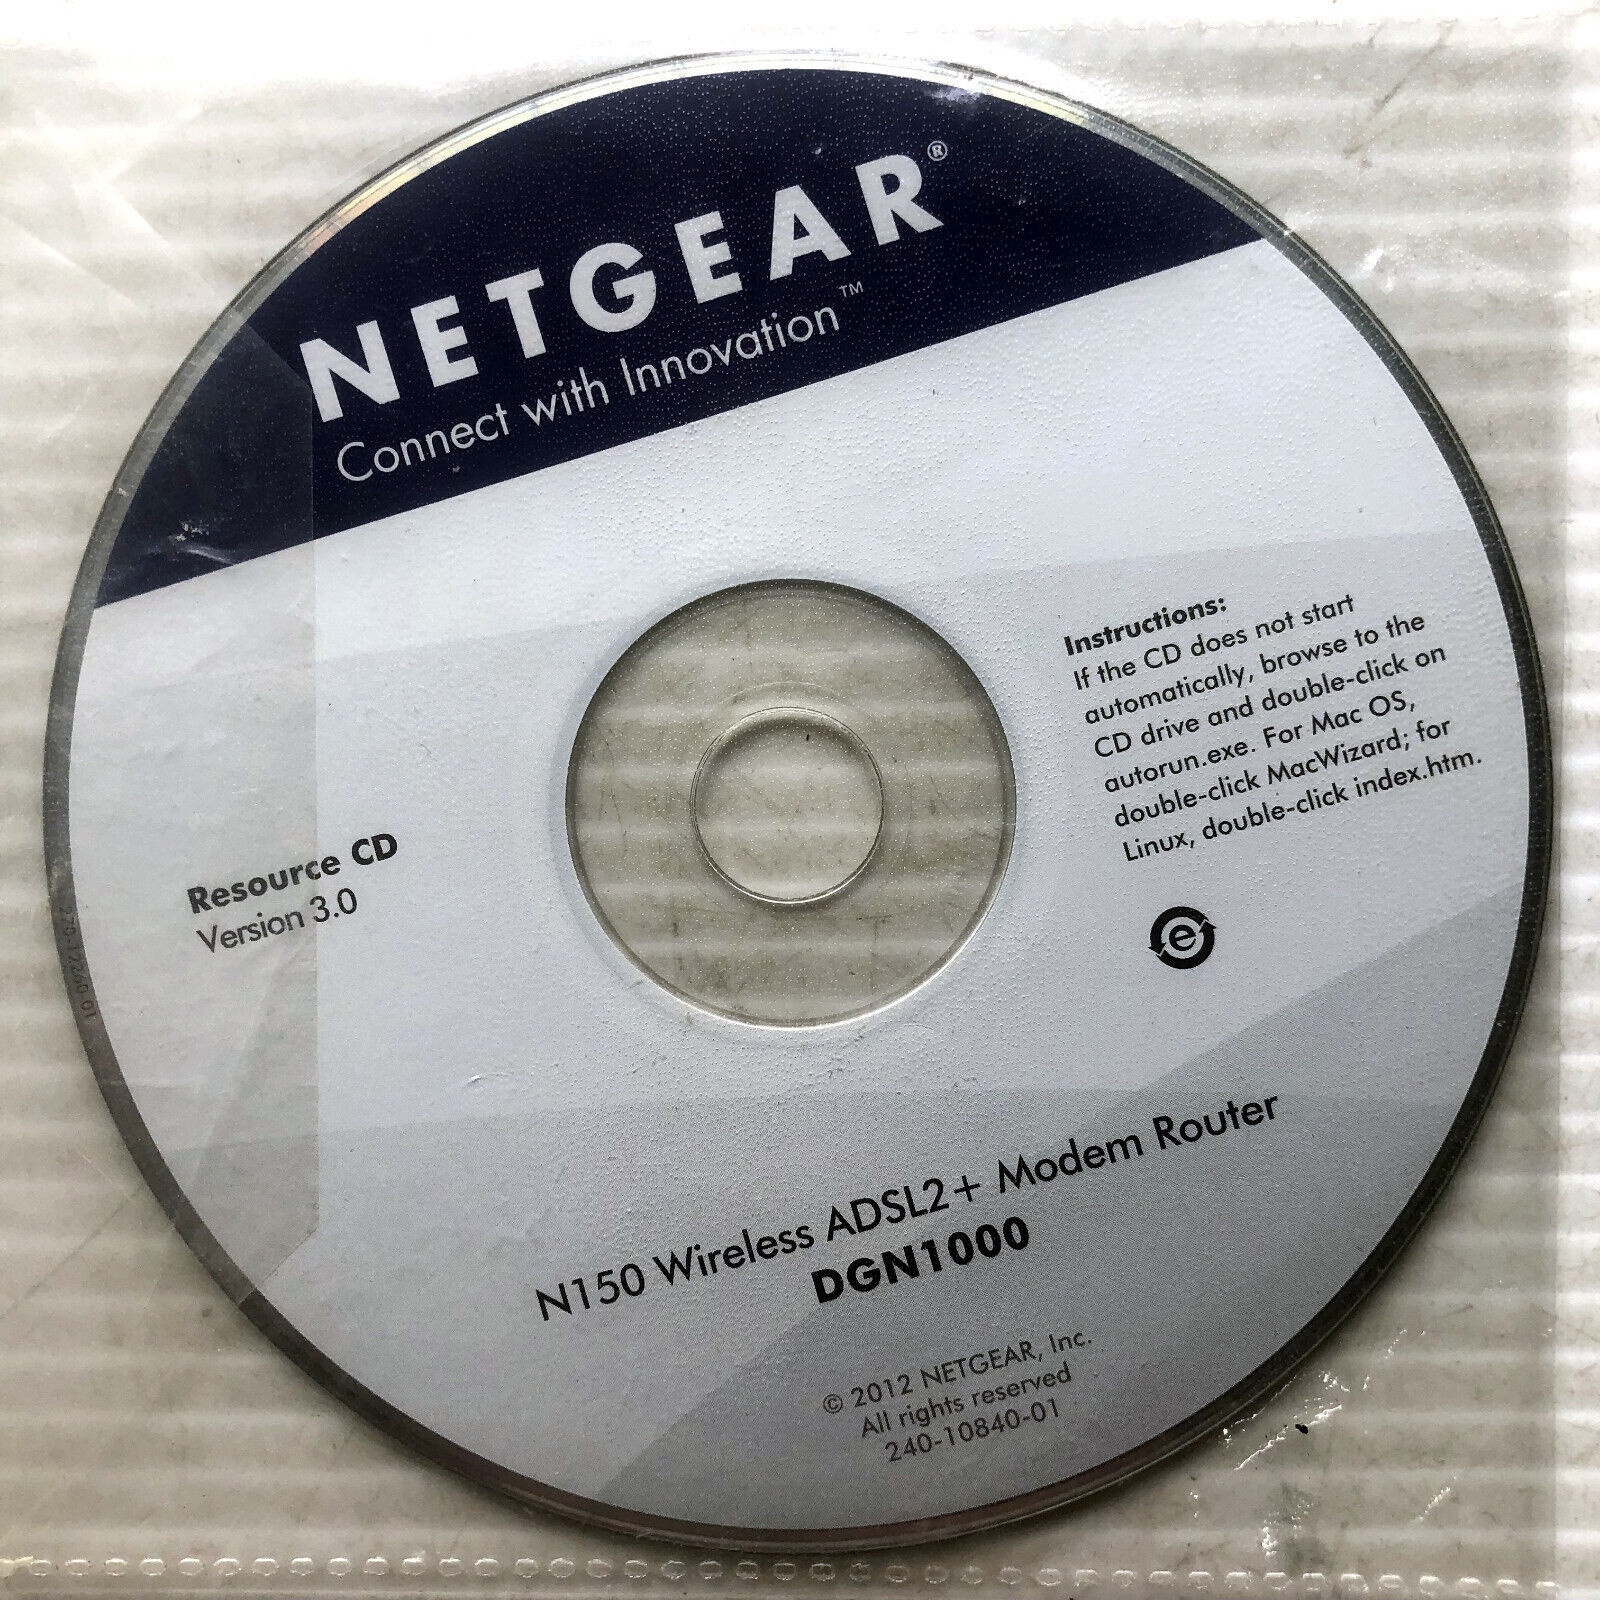 NETGEAR Resource CD Version 3.0 N150 Wireless ADSL2+ Modem Router DGN1000